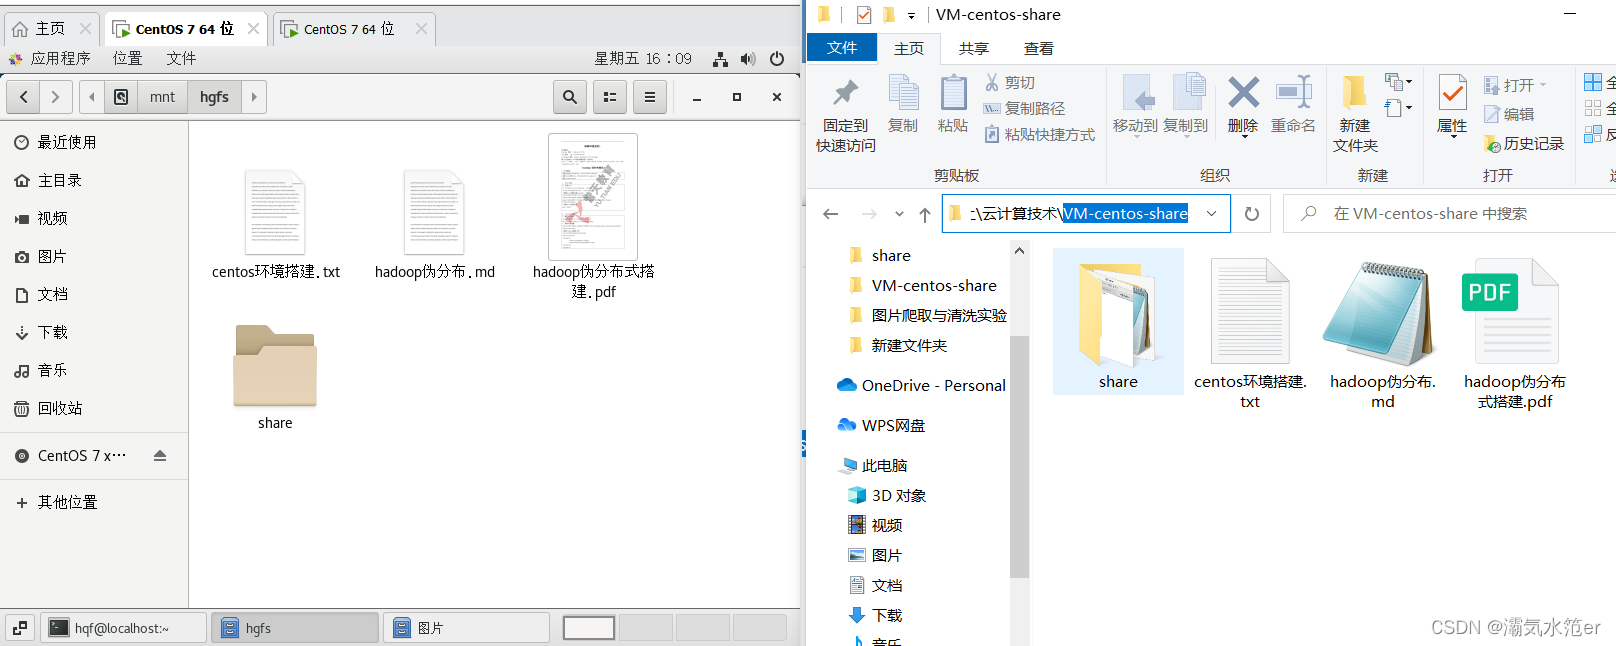 虚拟机安装CentOS7并配置共享文件夹